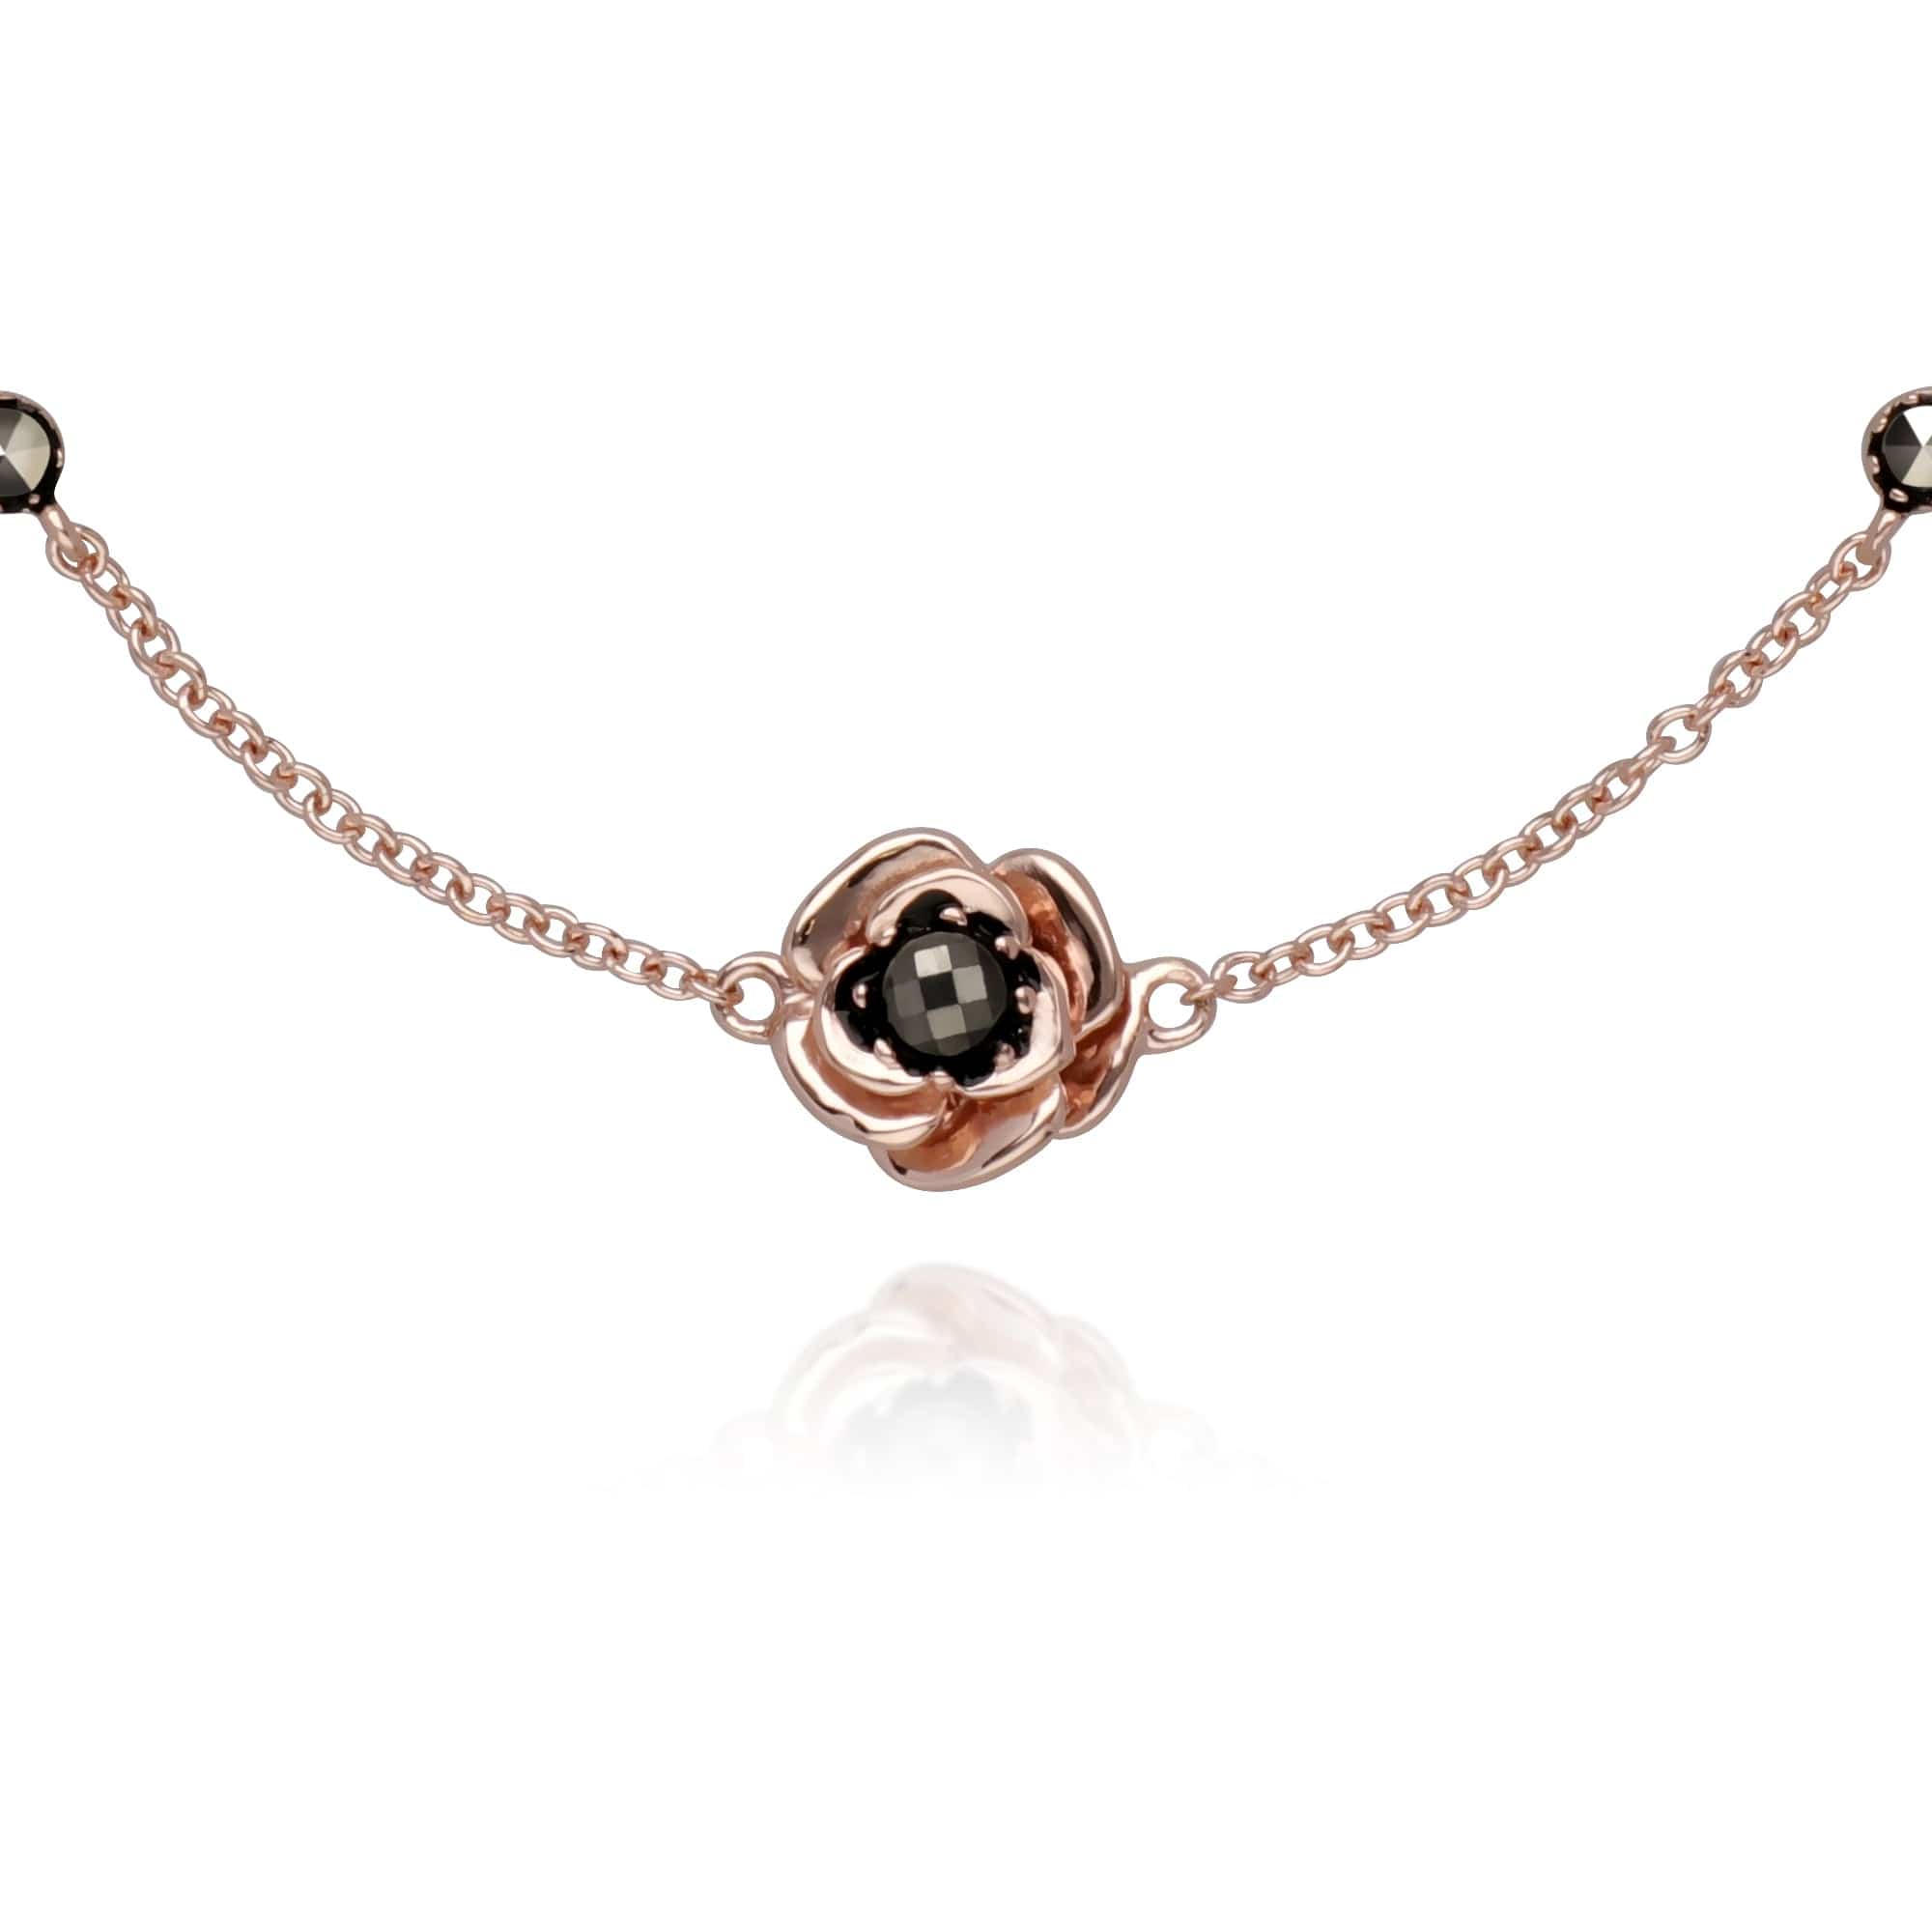 224L007501925-224R030401925 Rose Gold Plated Marcasite Flower Ring & Bracelet Set in 925 Sterling Silver 2